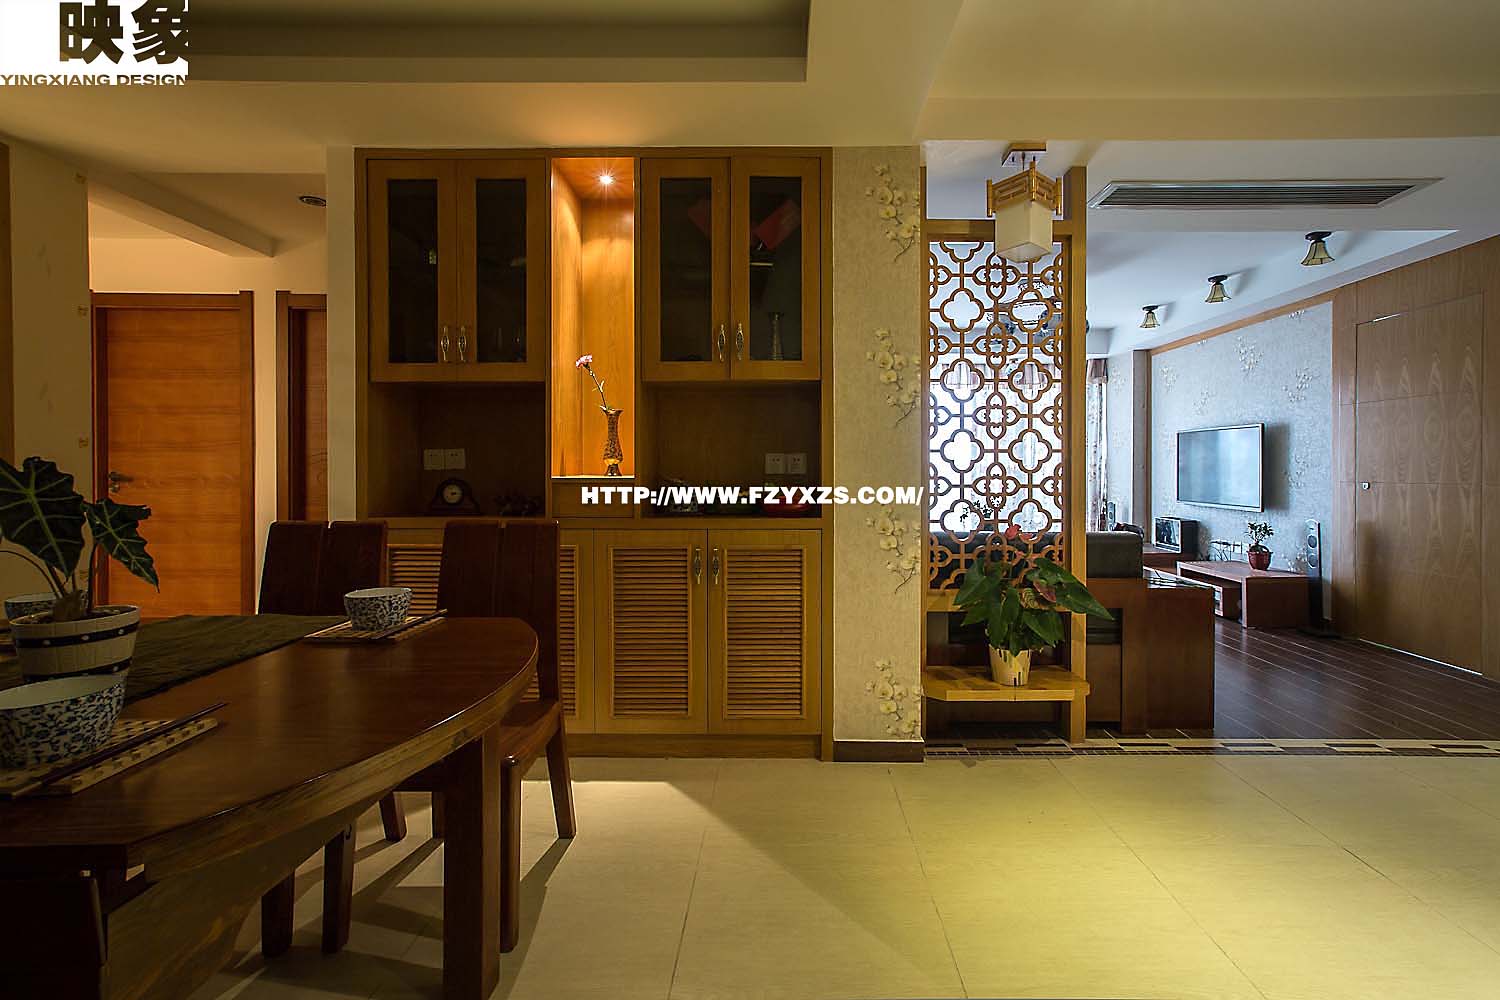 福州三室一厅中式古典棕色装修效果图 福州三室一厅中式古典棕色装修效果图 2013图片